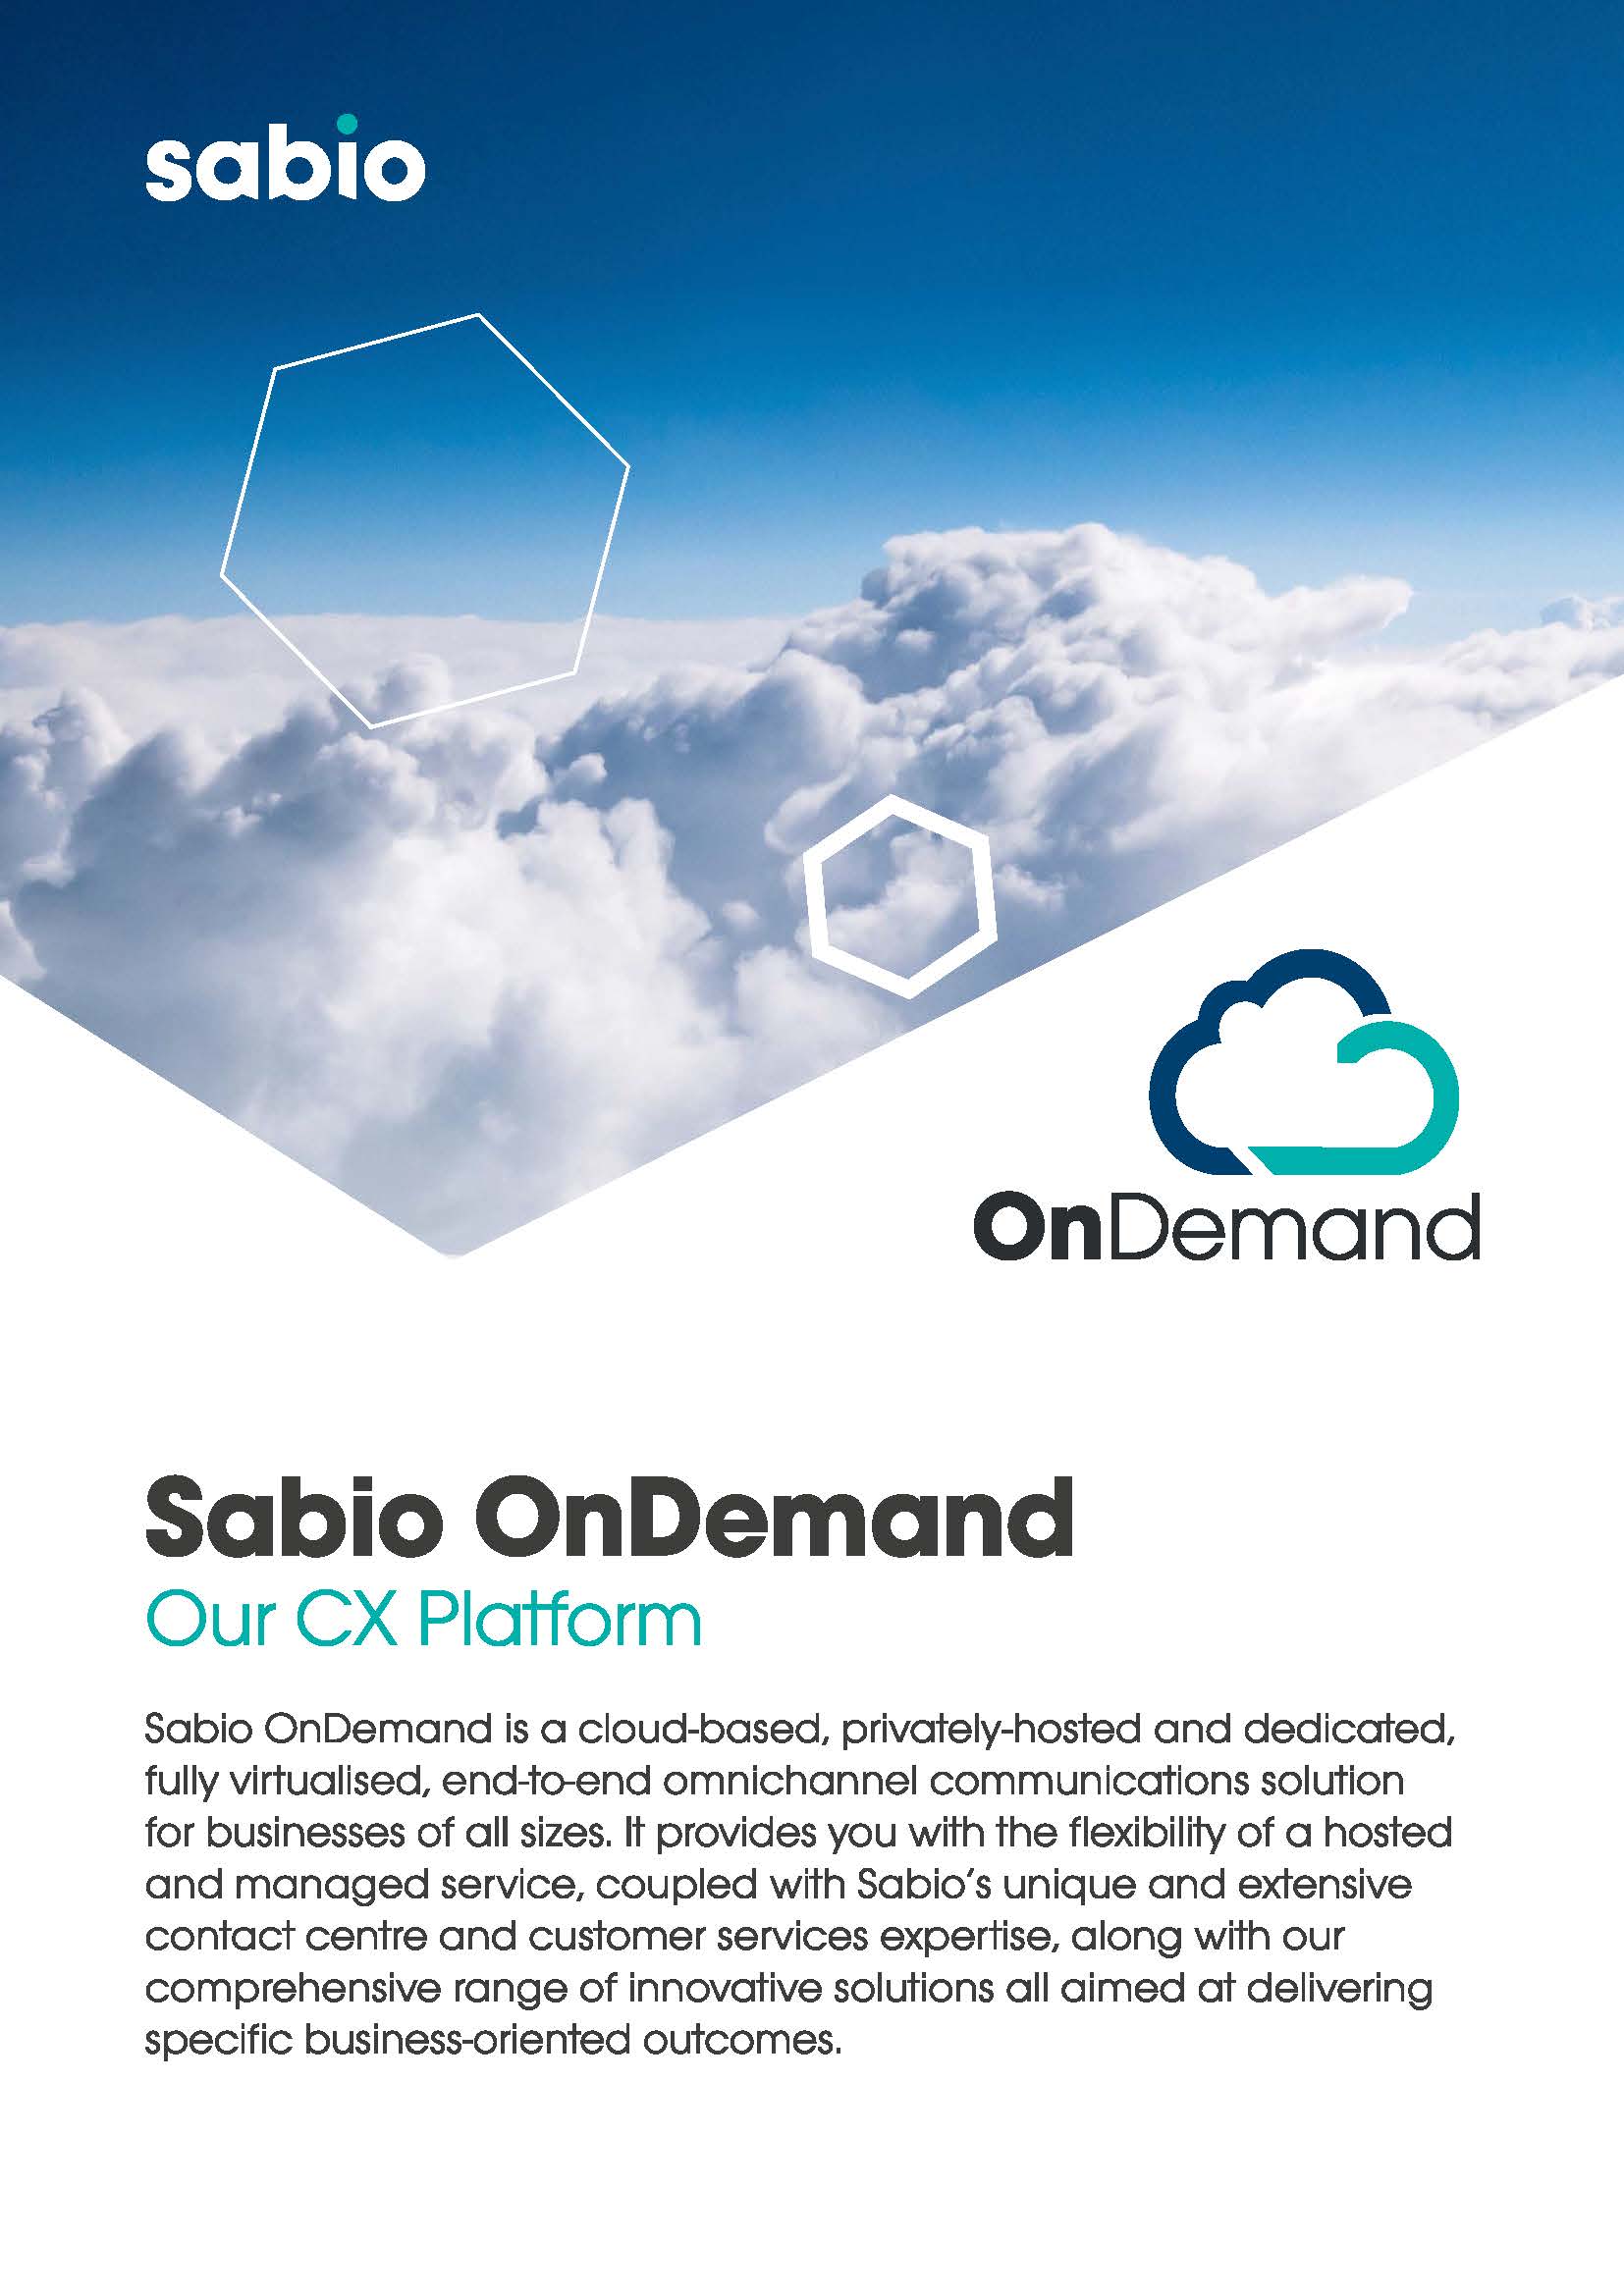 Sabio OnDemand Support Services